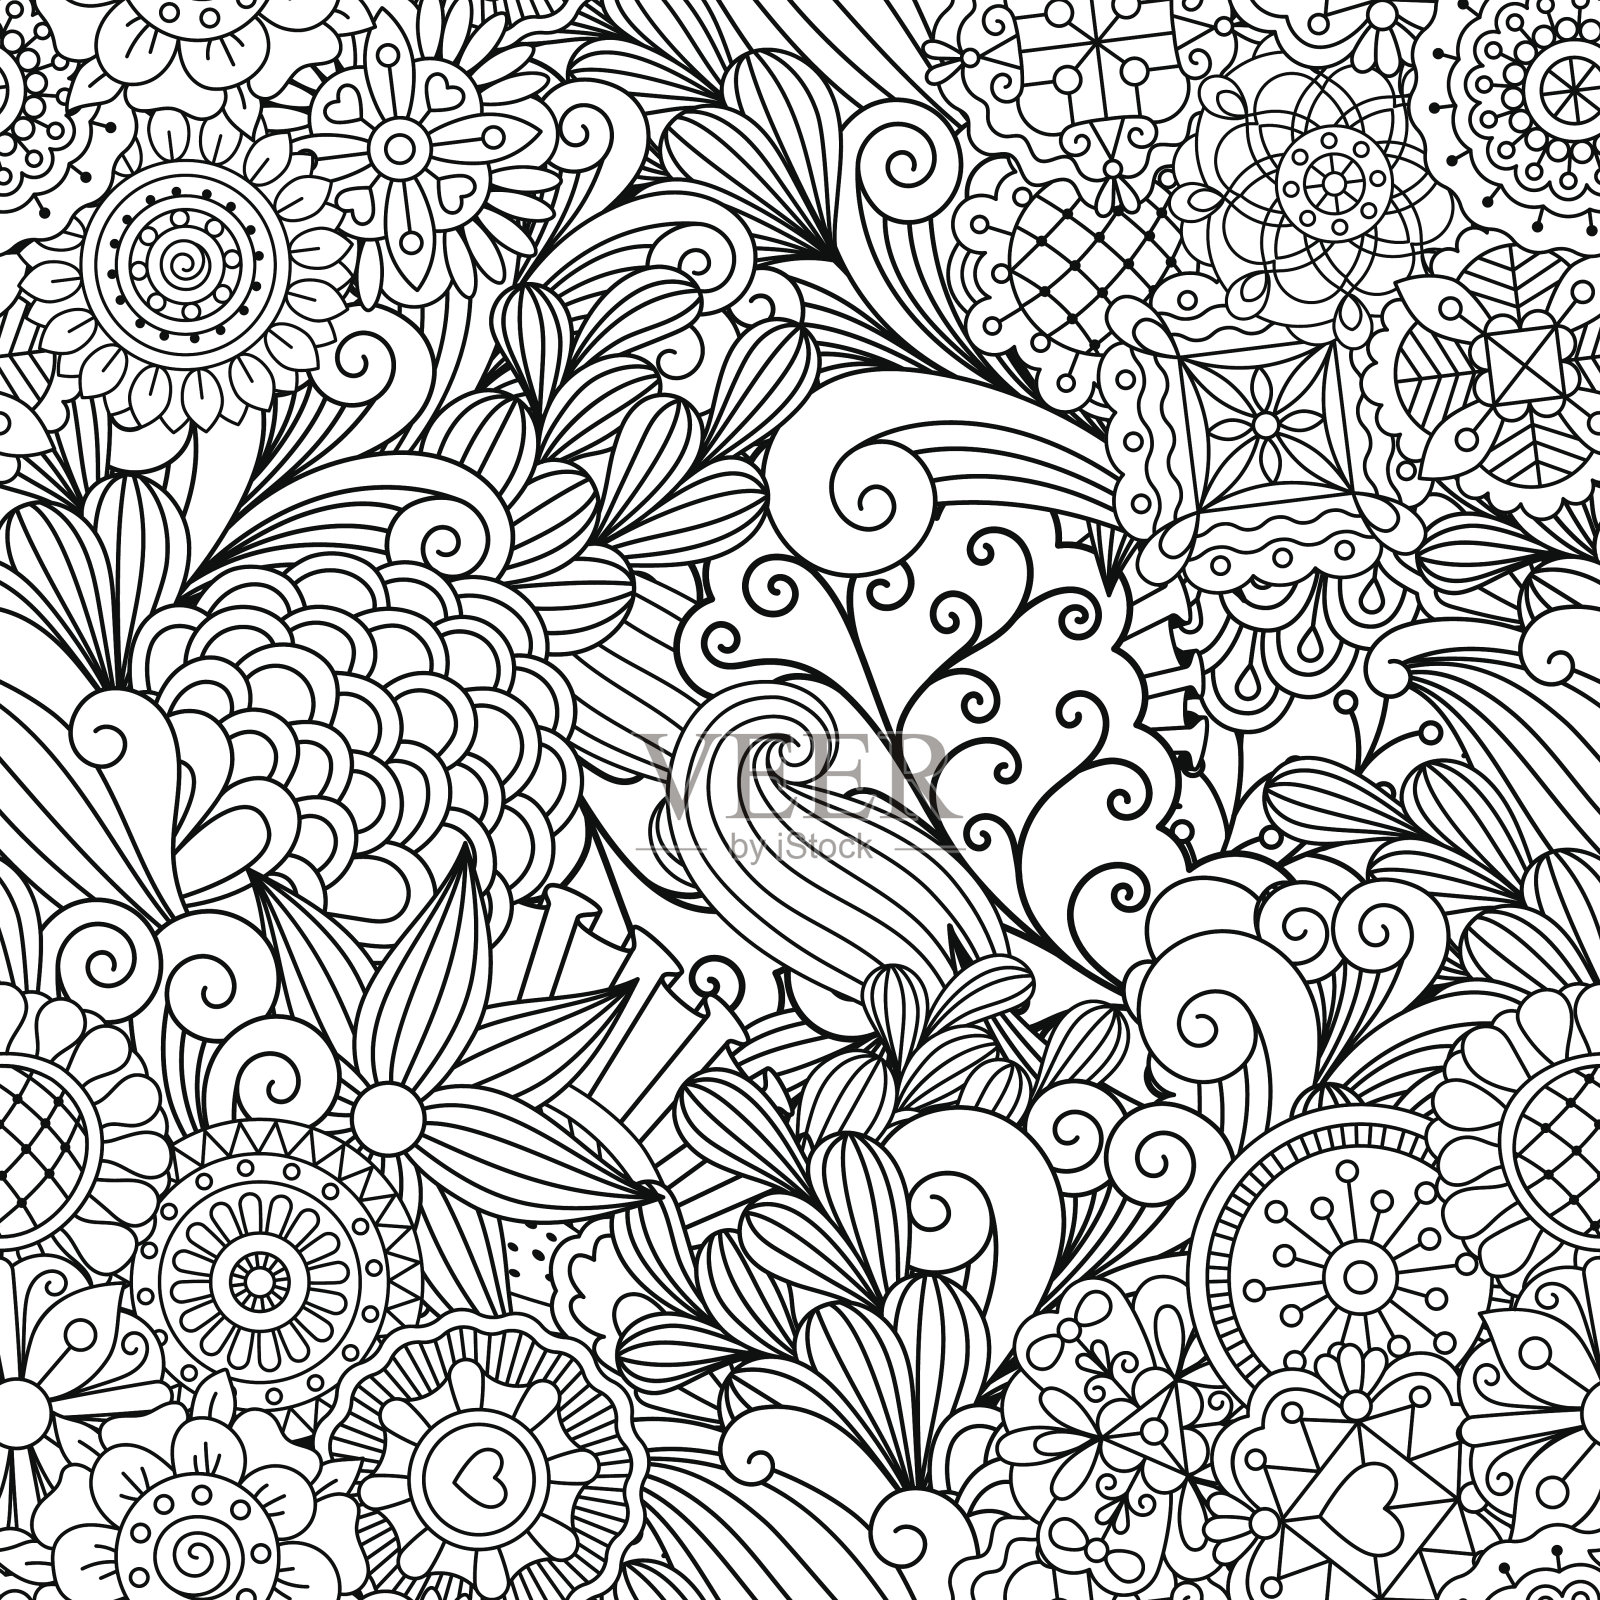 黑白相间的花卉装饰图案插画图片素材